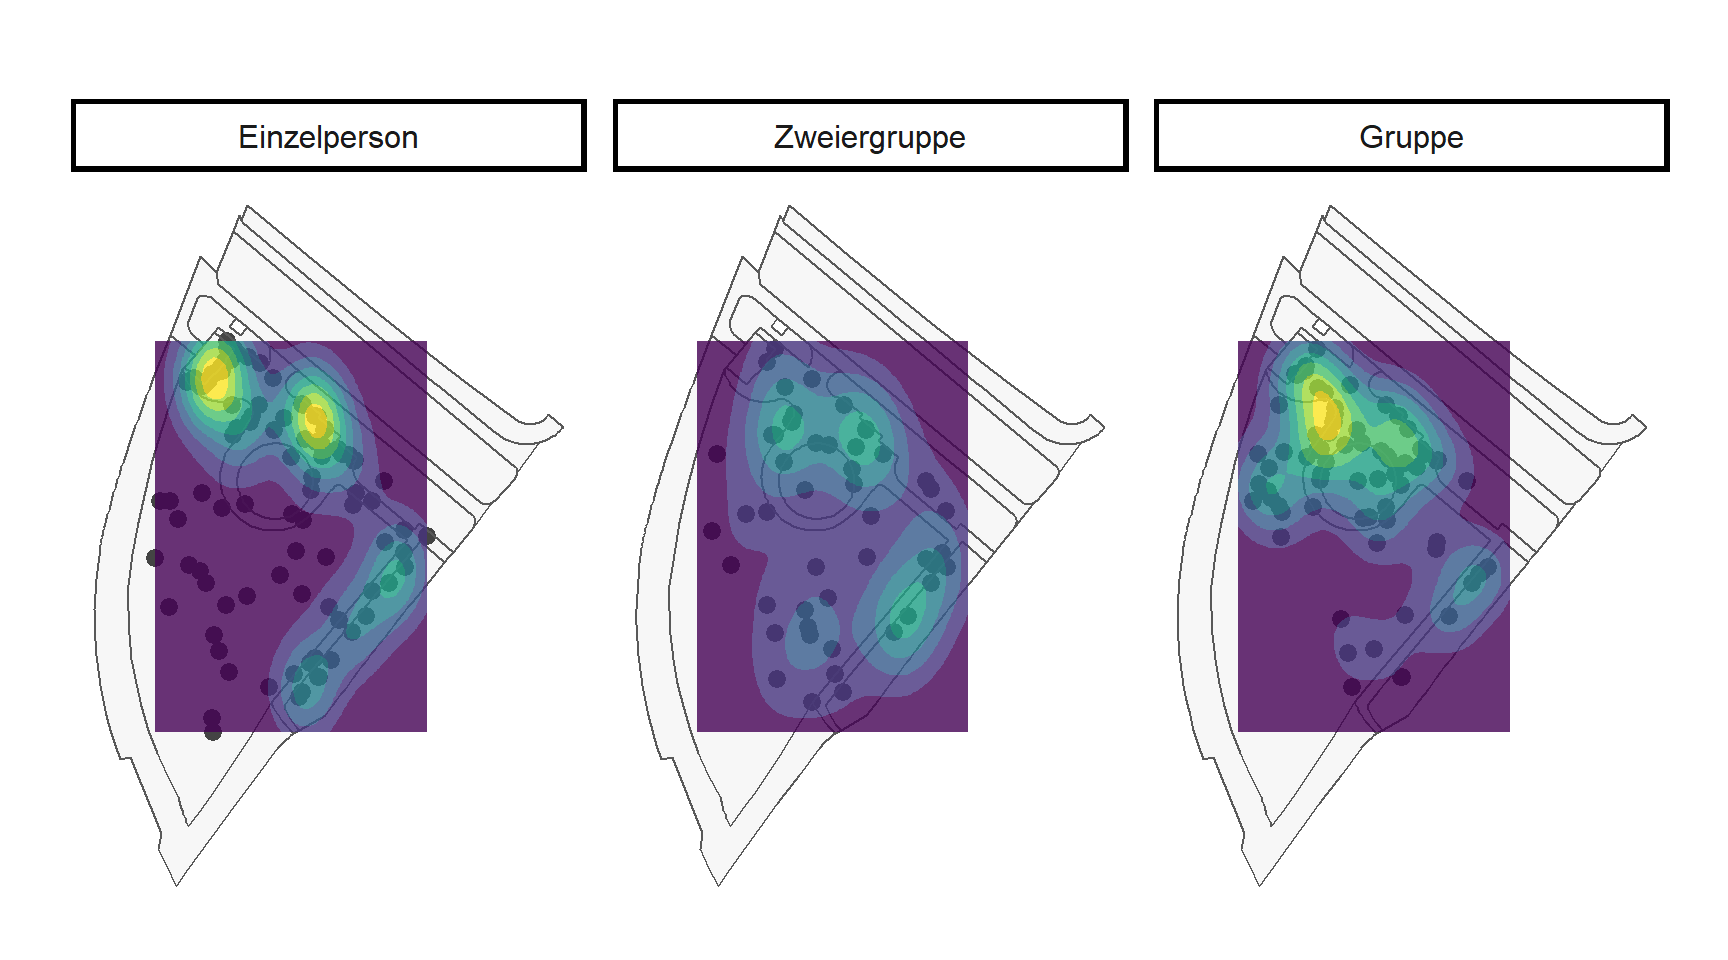 Räumliche Verteilung der Personen während den Beobachtungen im Sihlhölzlipark im September 2020 visualisiert mittels einer Heatmap. Dargestellt sind alle Erfassungen während den Beobachtungstagen.